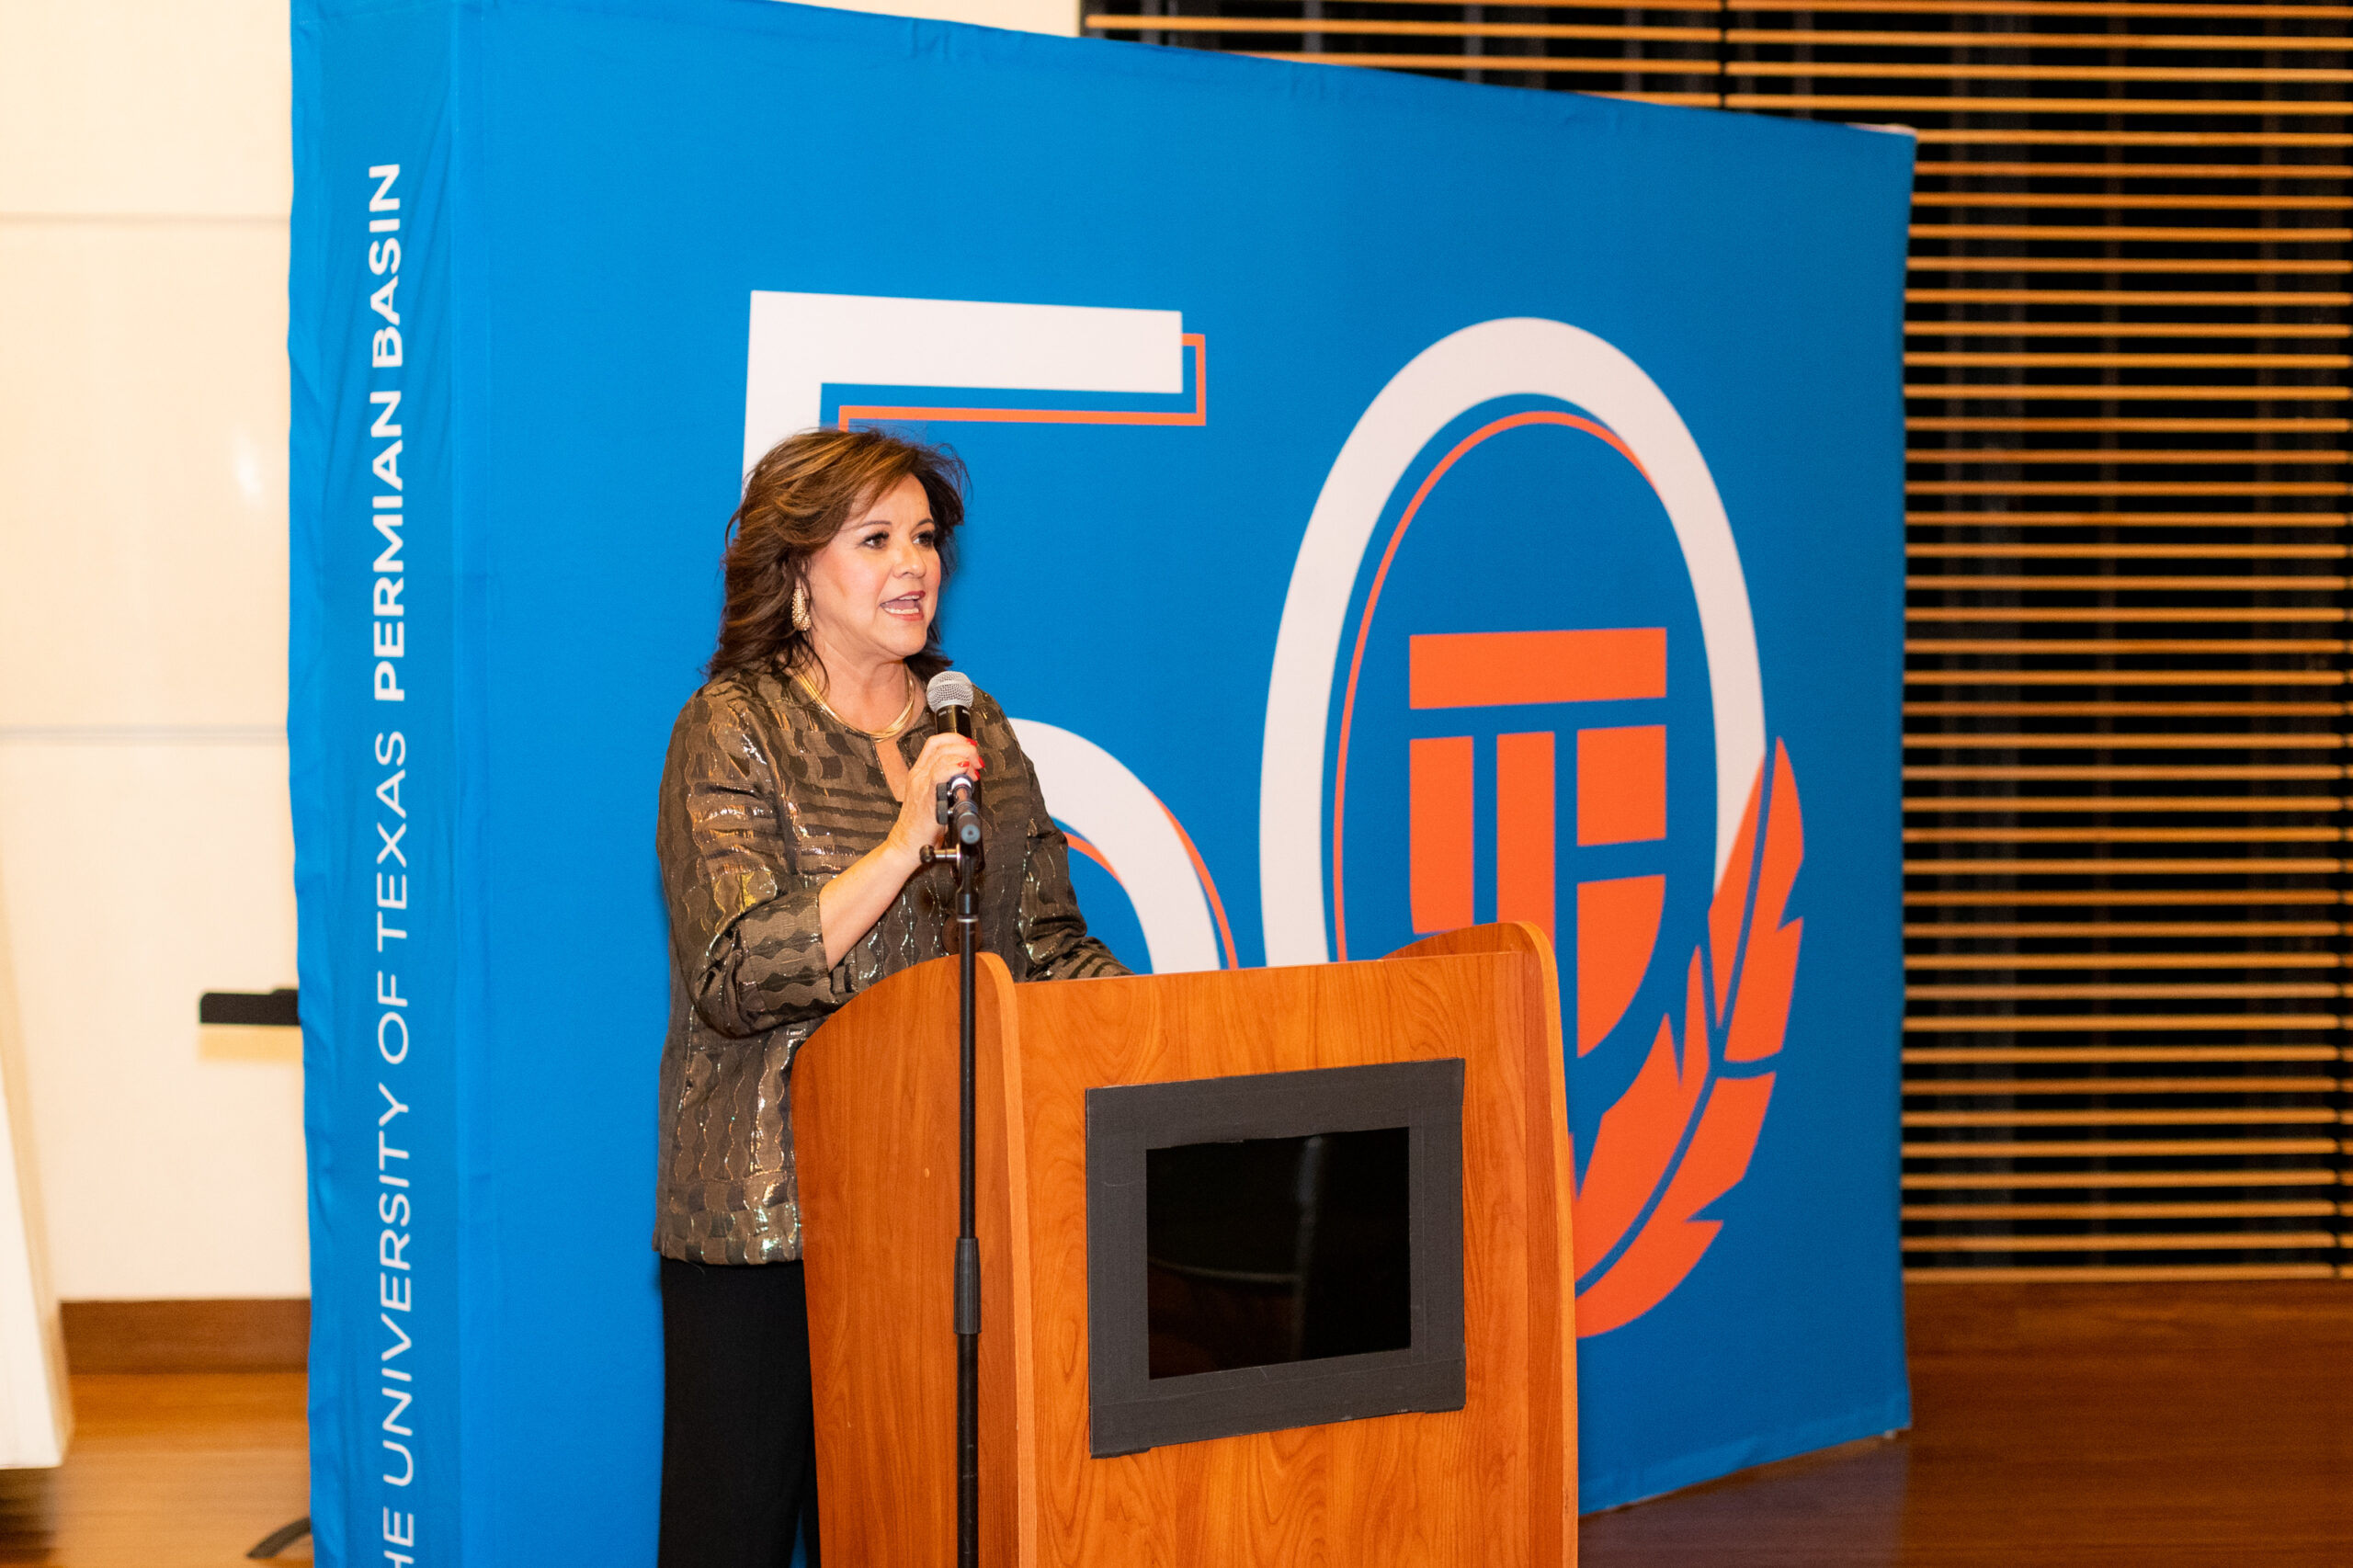 Monica Tschauner introducing at a podium